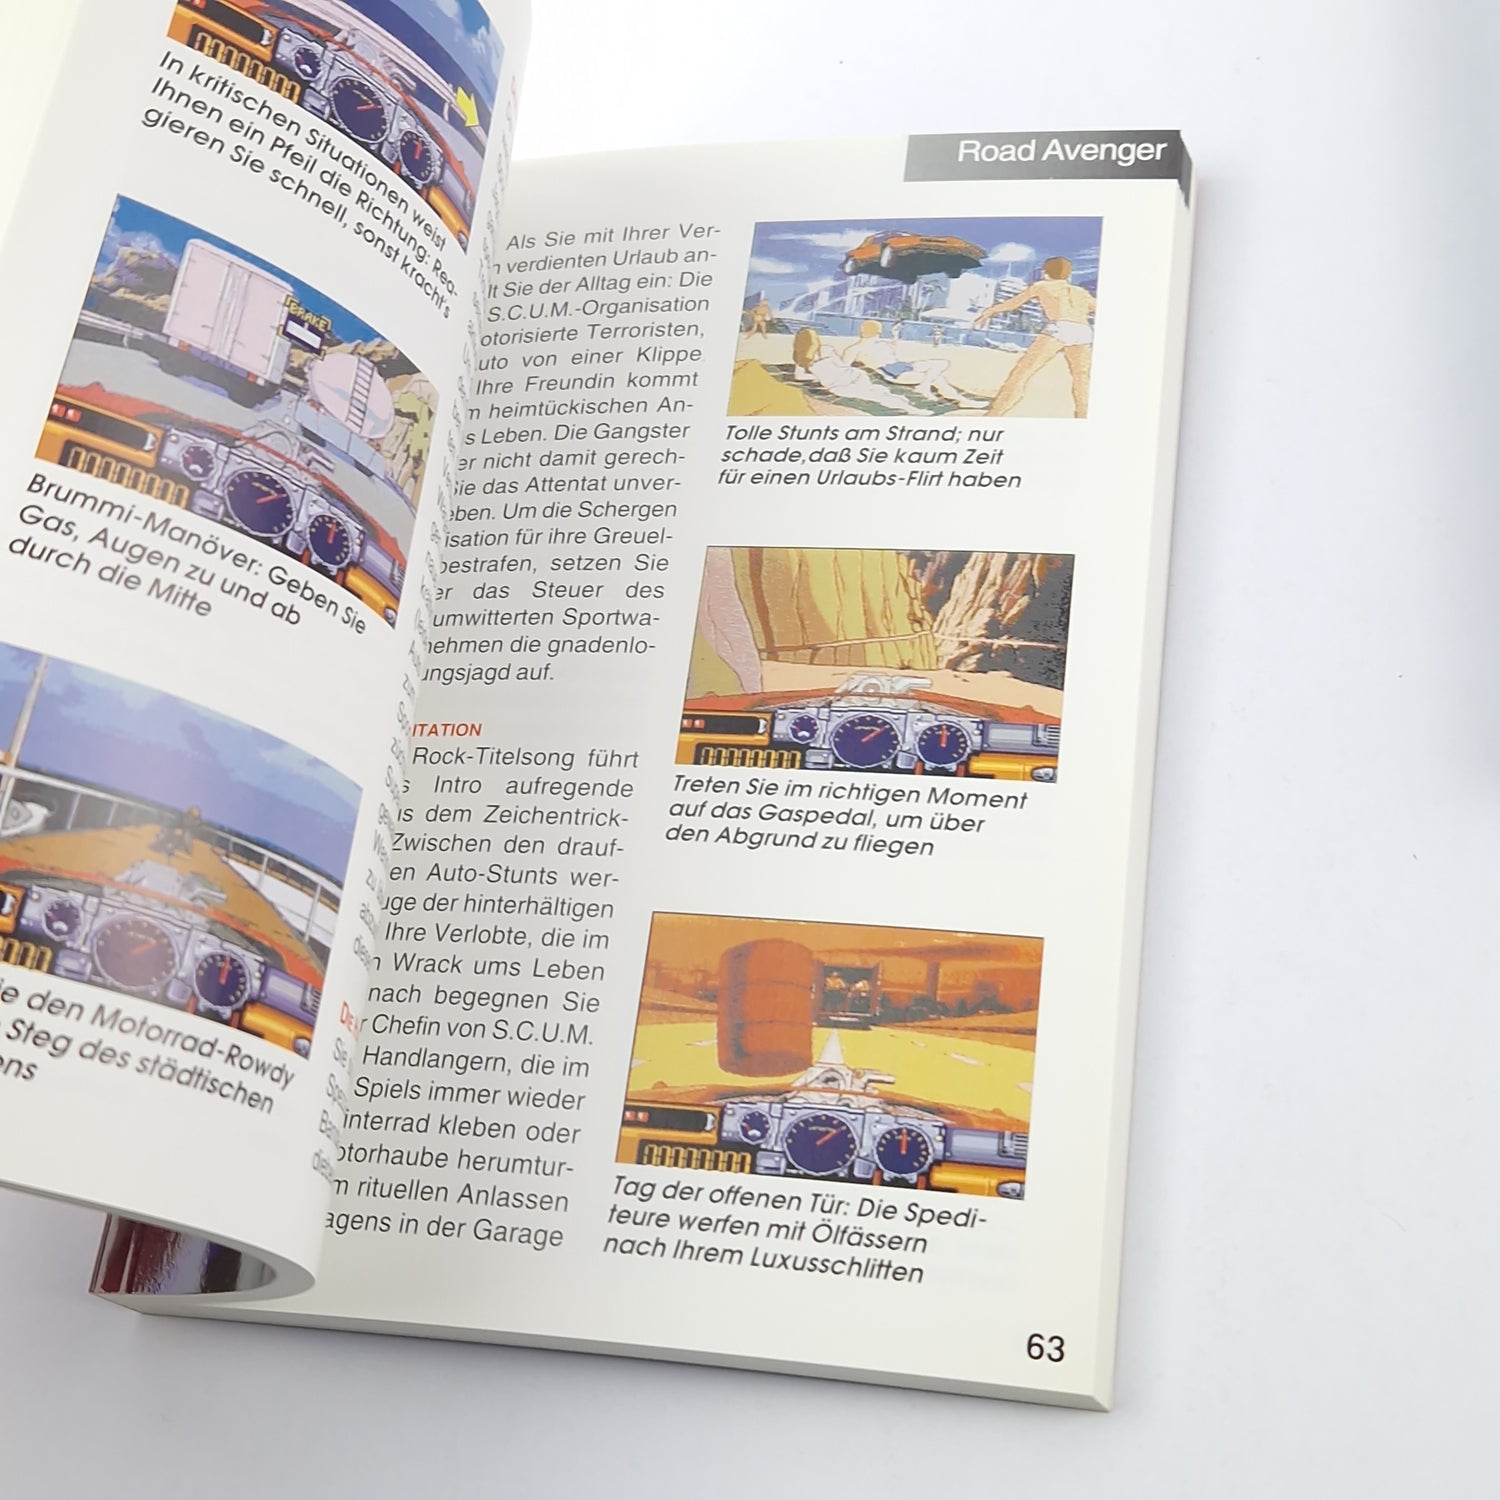 Sega Mega-CD Spiele Technik Hintergründe + Mega Drive Collectors Guide